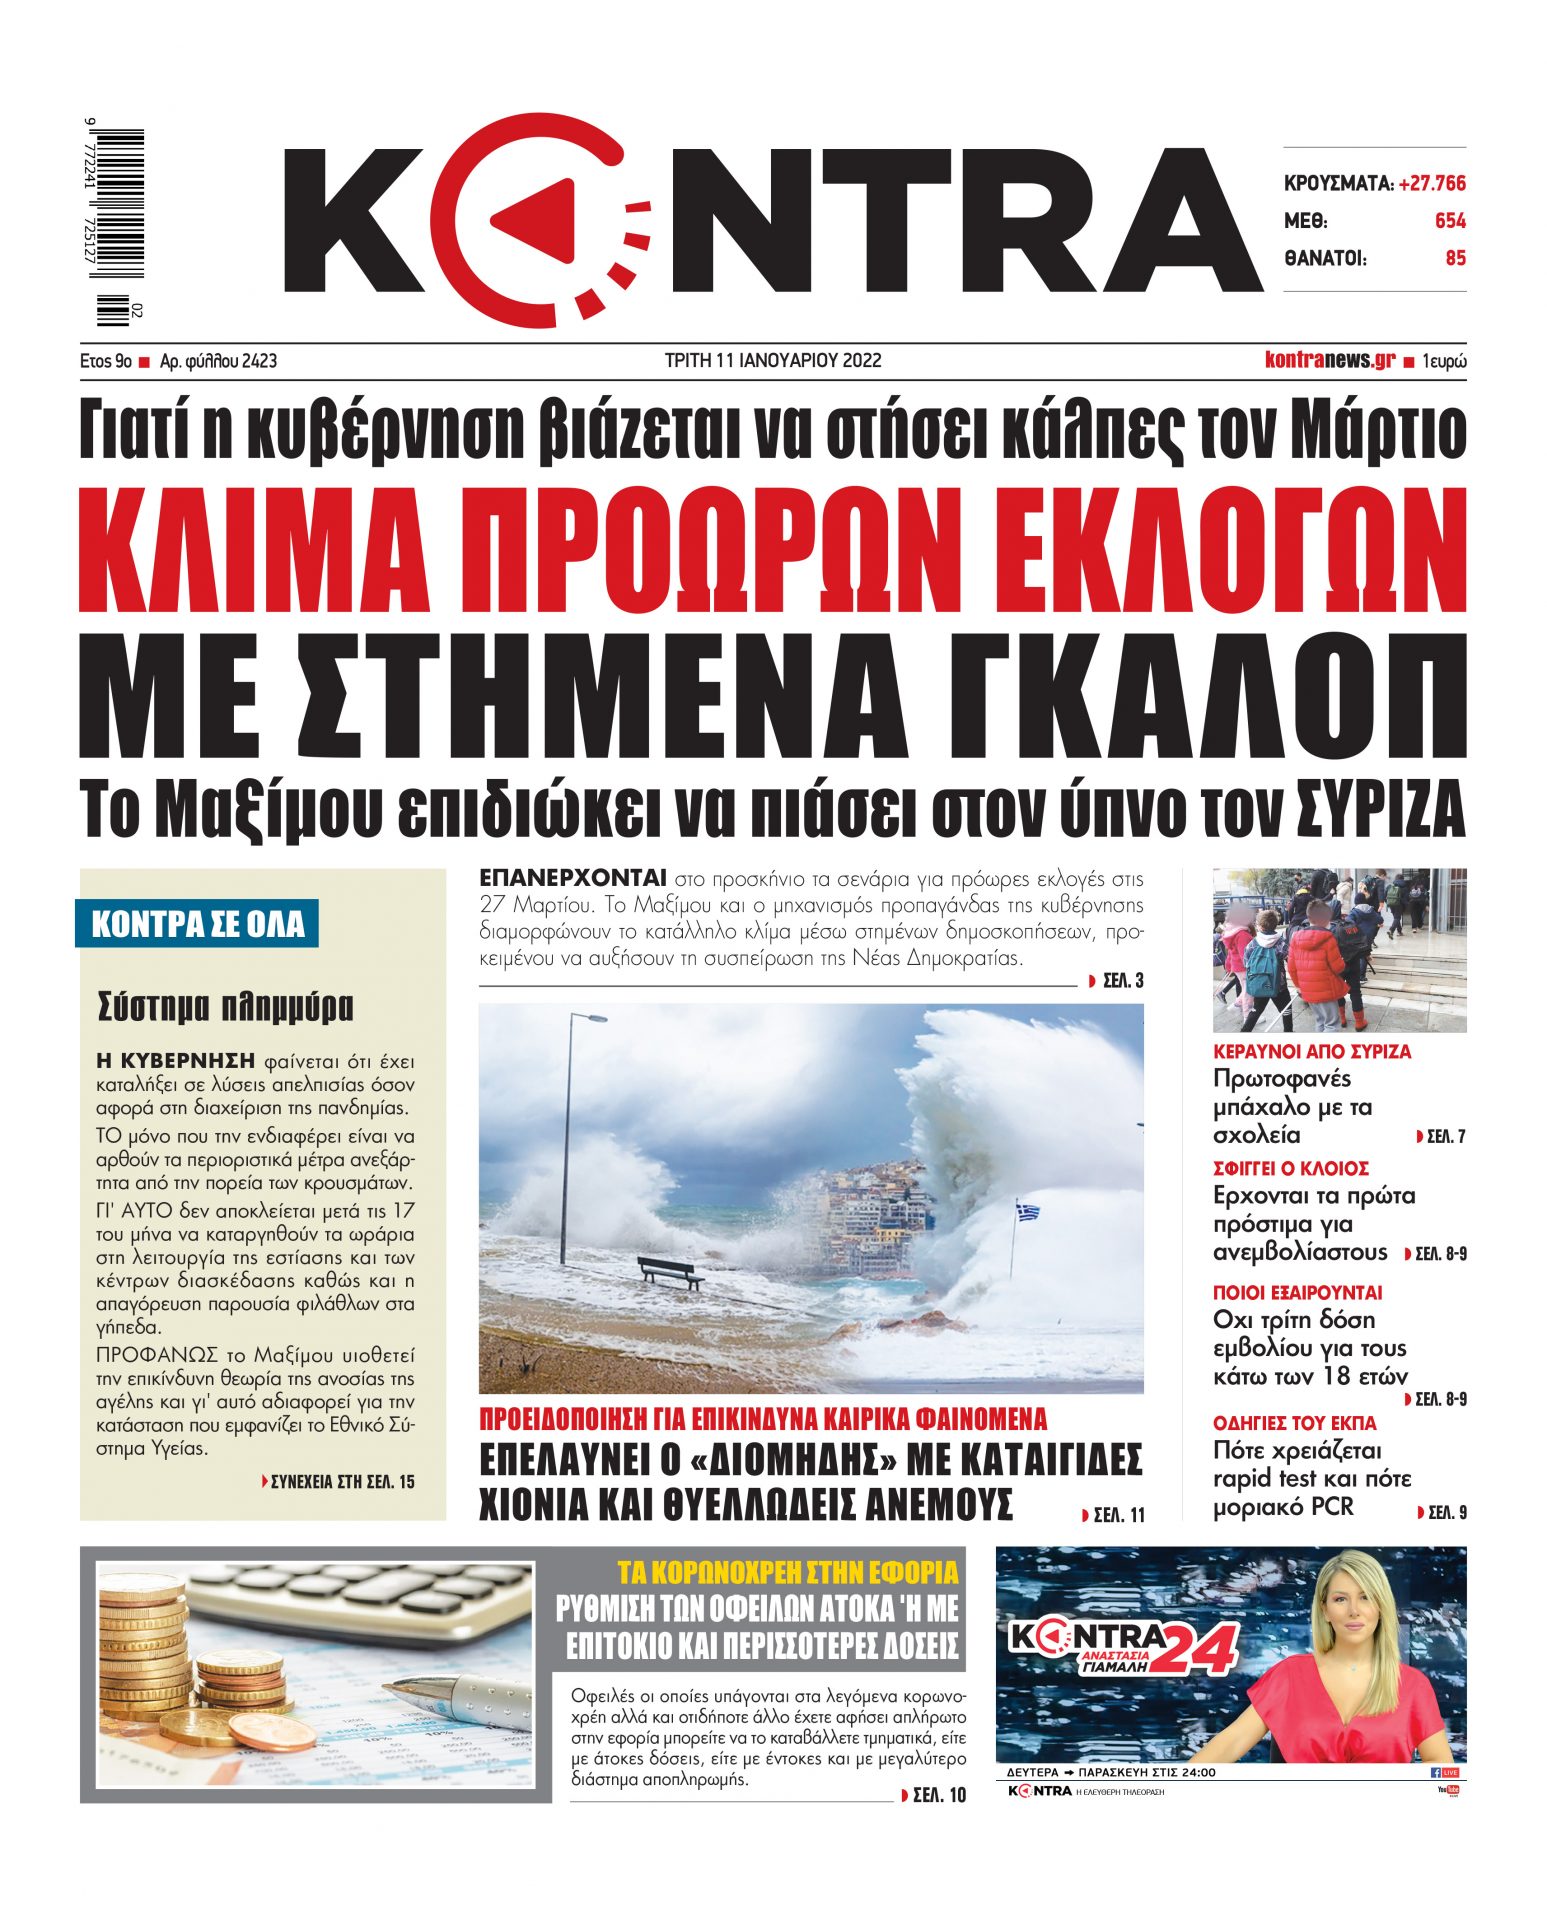 ΠΡΩΤΟΣΕΛΙΔΟ KONTRA NEWS 11 1 2022 scaled